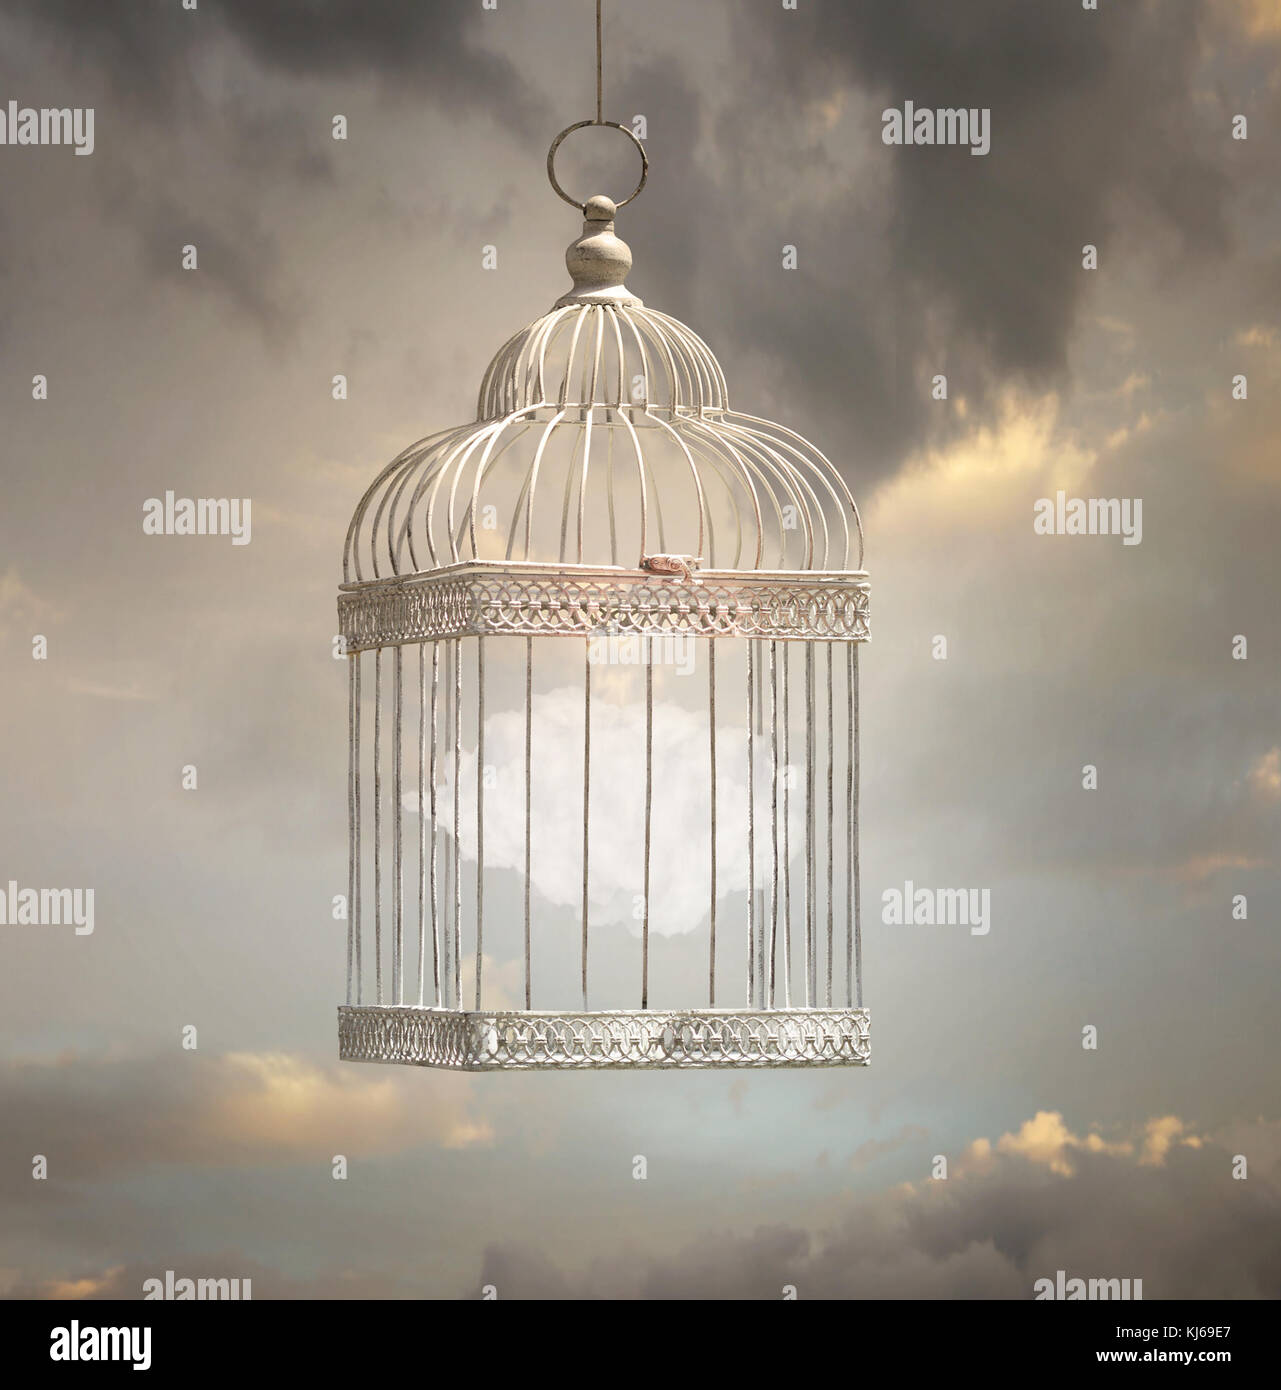 Image de rêve qui représentent un nuage à l'intérieur d'une cage avec un beau ciel en arrière-plan Banque D'Images